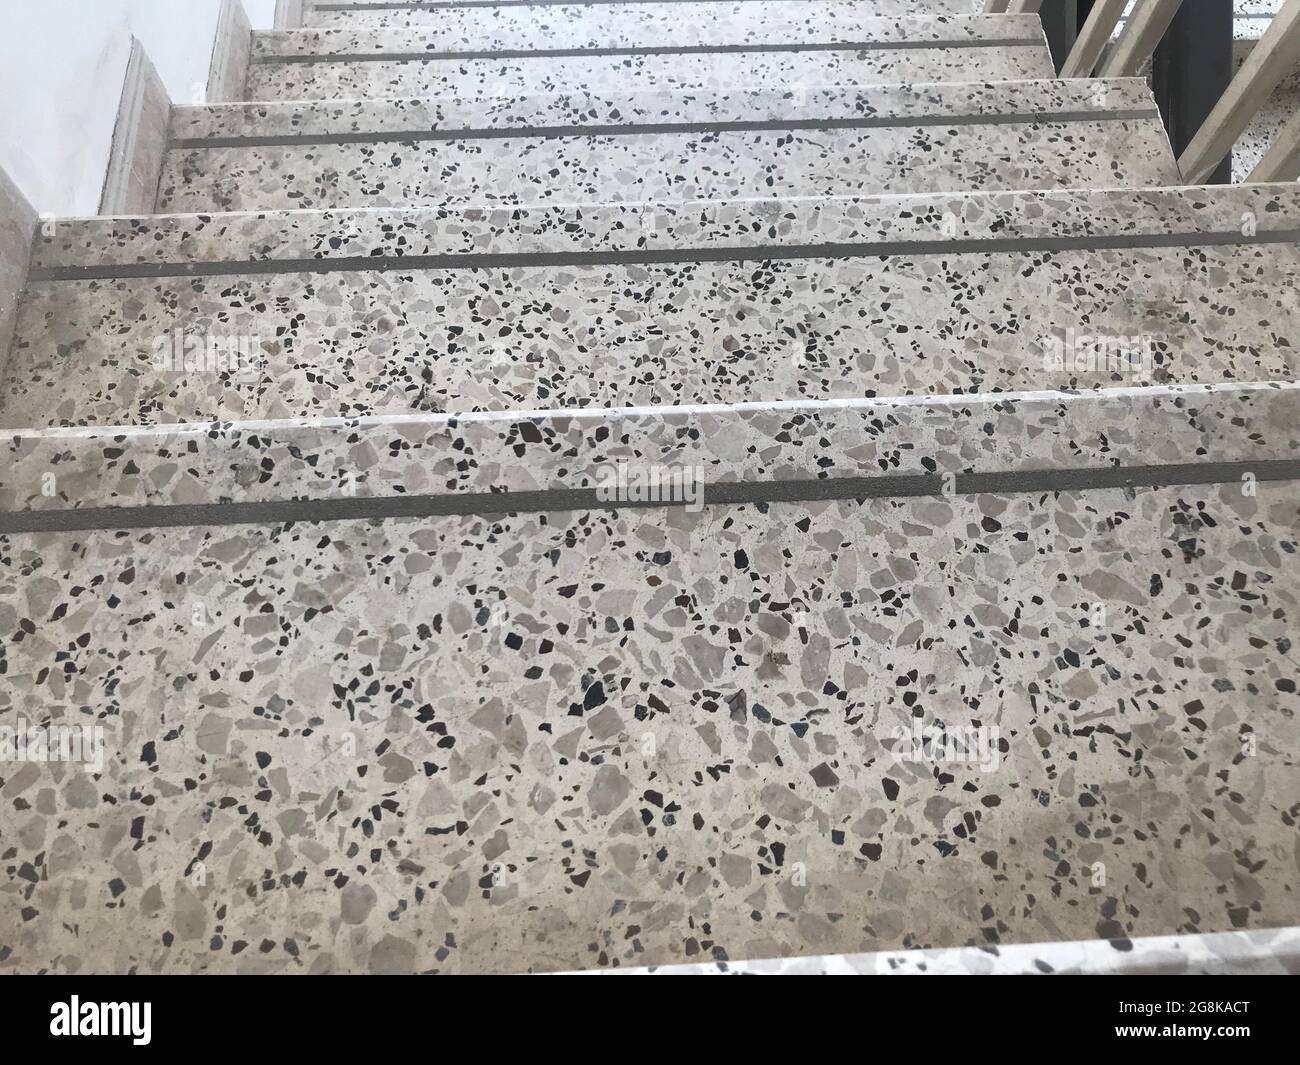 Rainures antidérapantes sur les marches de l'escalier fini par sol en pierre de granit et pour les marches d'un bâtiment de haute élévation incendie évacuation d'urgence Banque D'Images